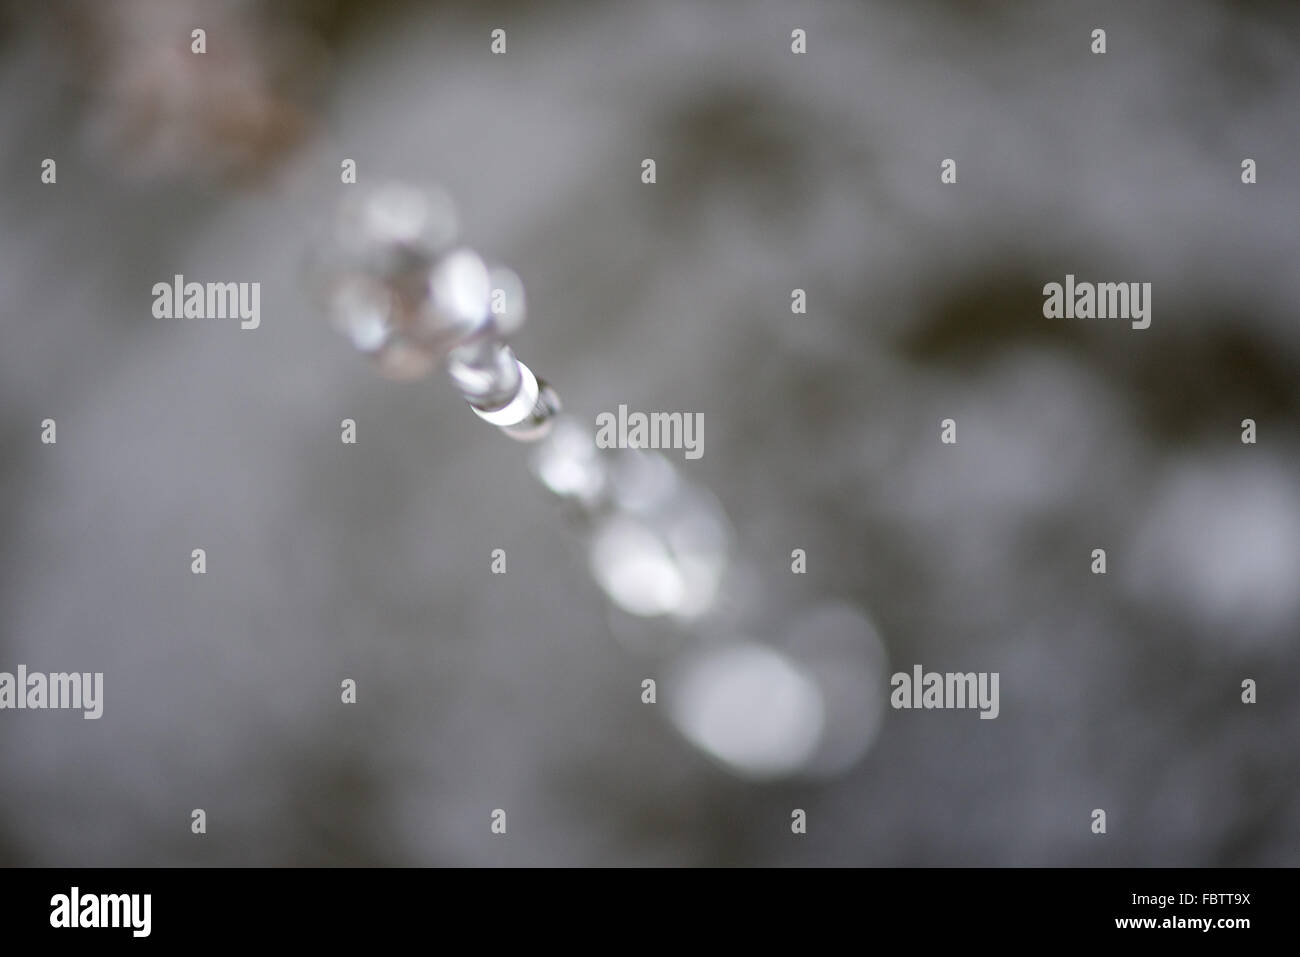 Splaashing water, blurred Stock Photo